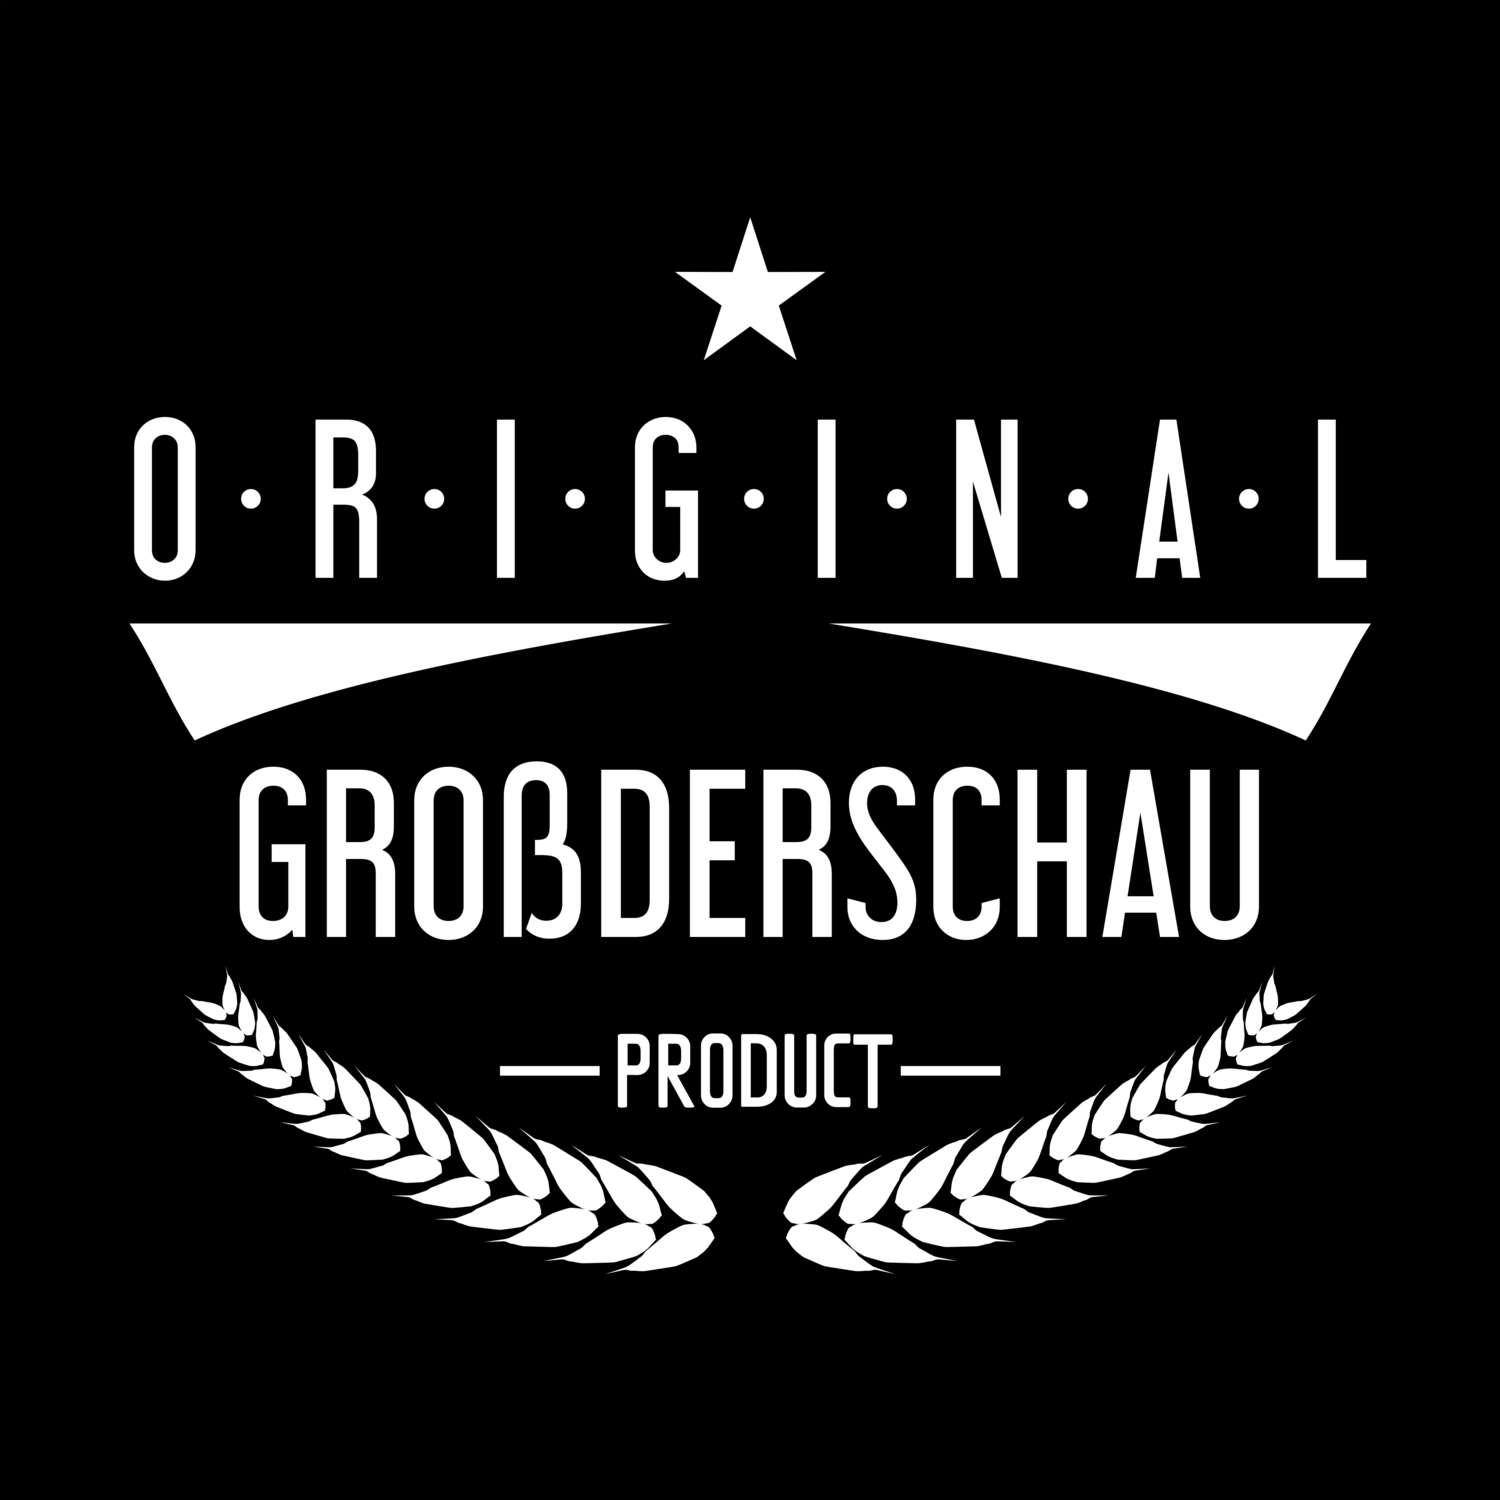 Großderschau T-Shirt »Original Product«